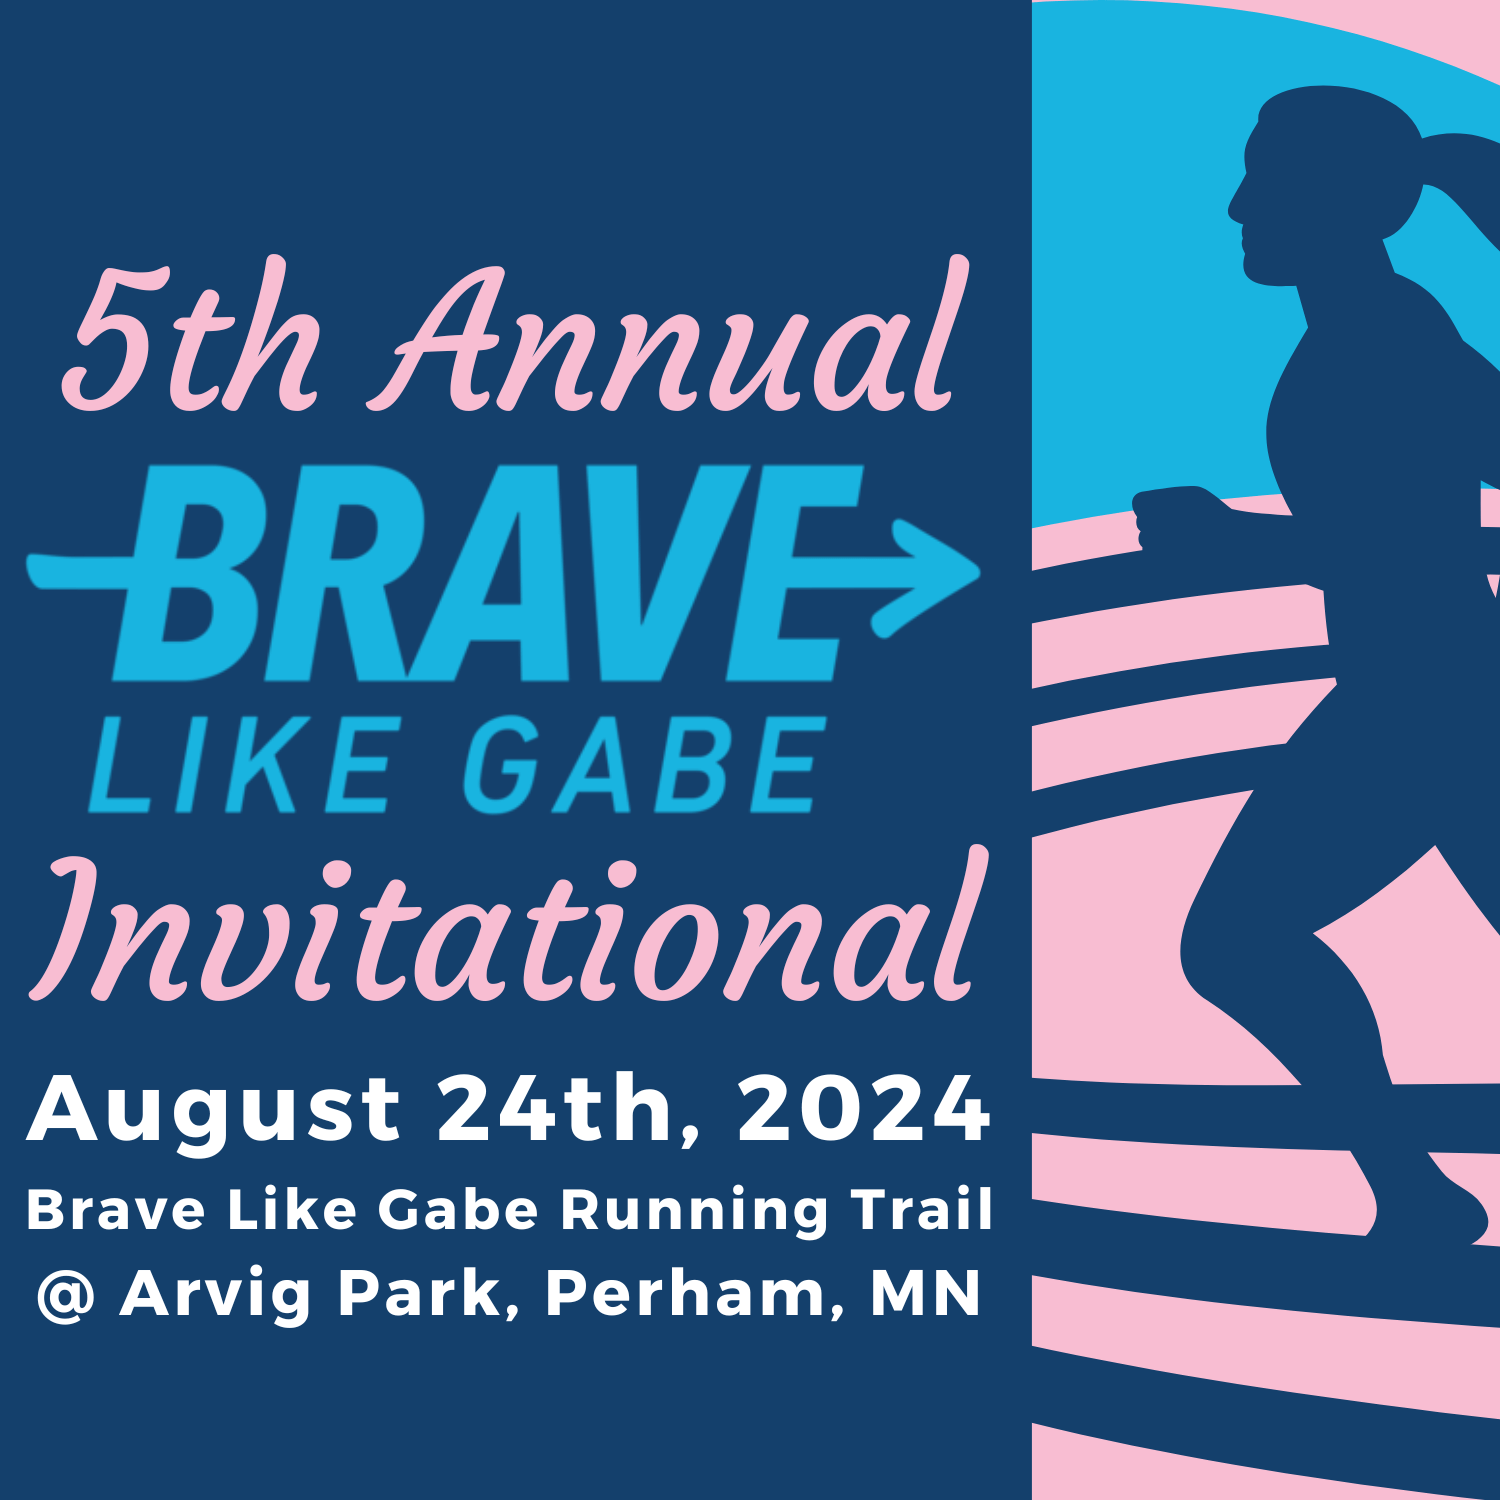 8-24 brave like gabe invitational